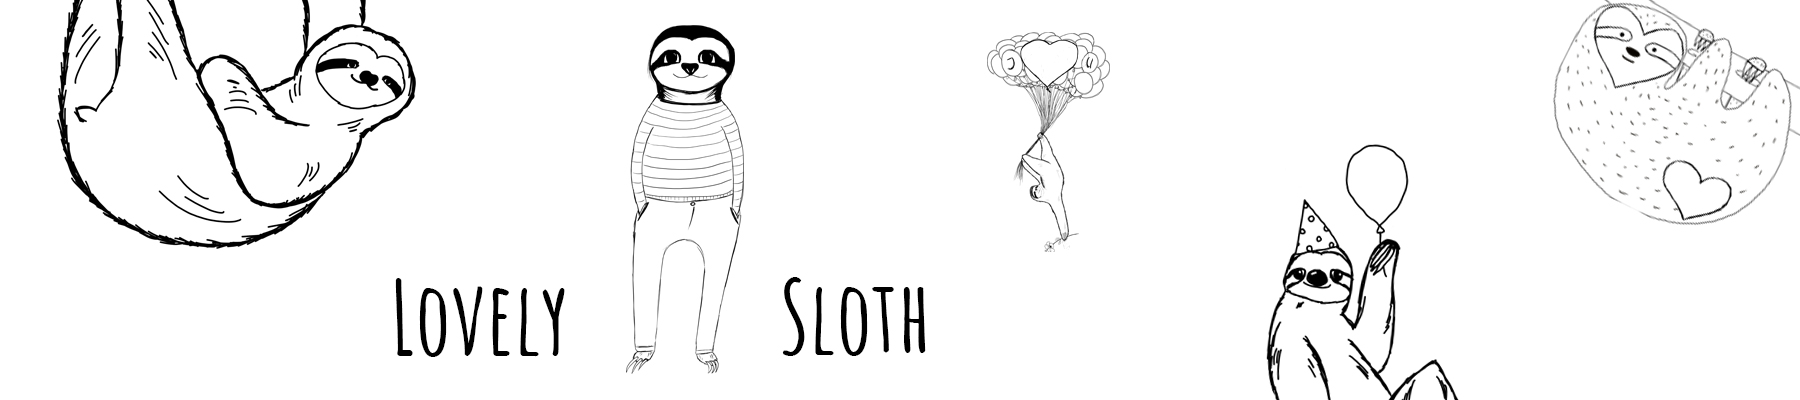 Lovely Sloth Headerbild schwarz weiss